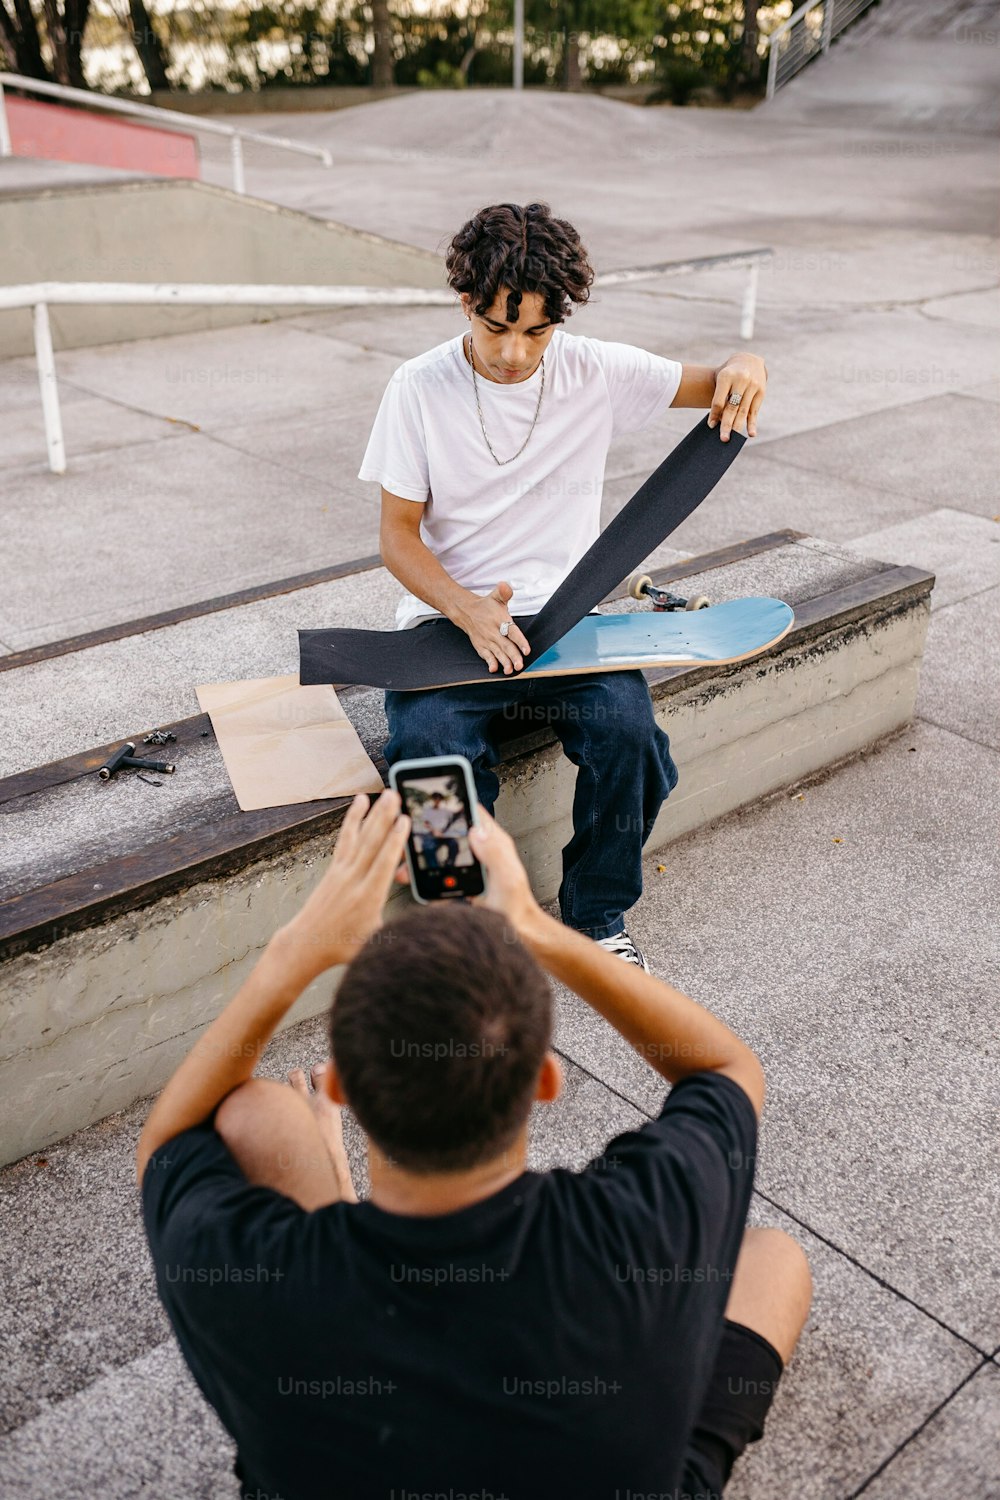 Un homme prenant une photo d’un skateboarder